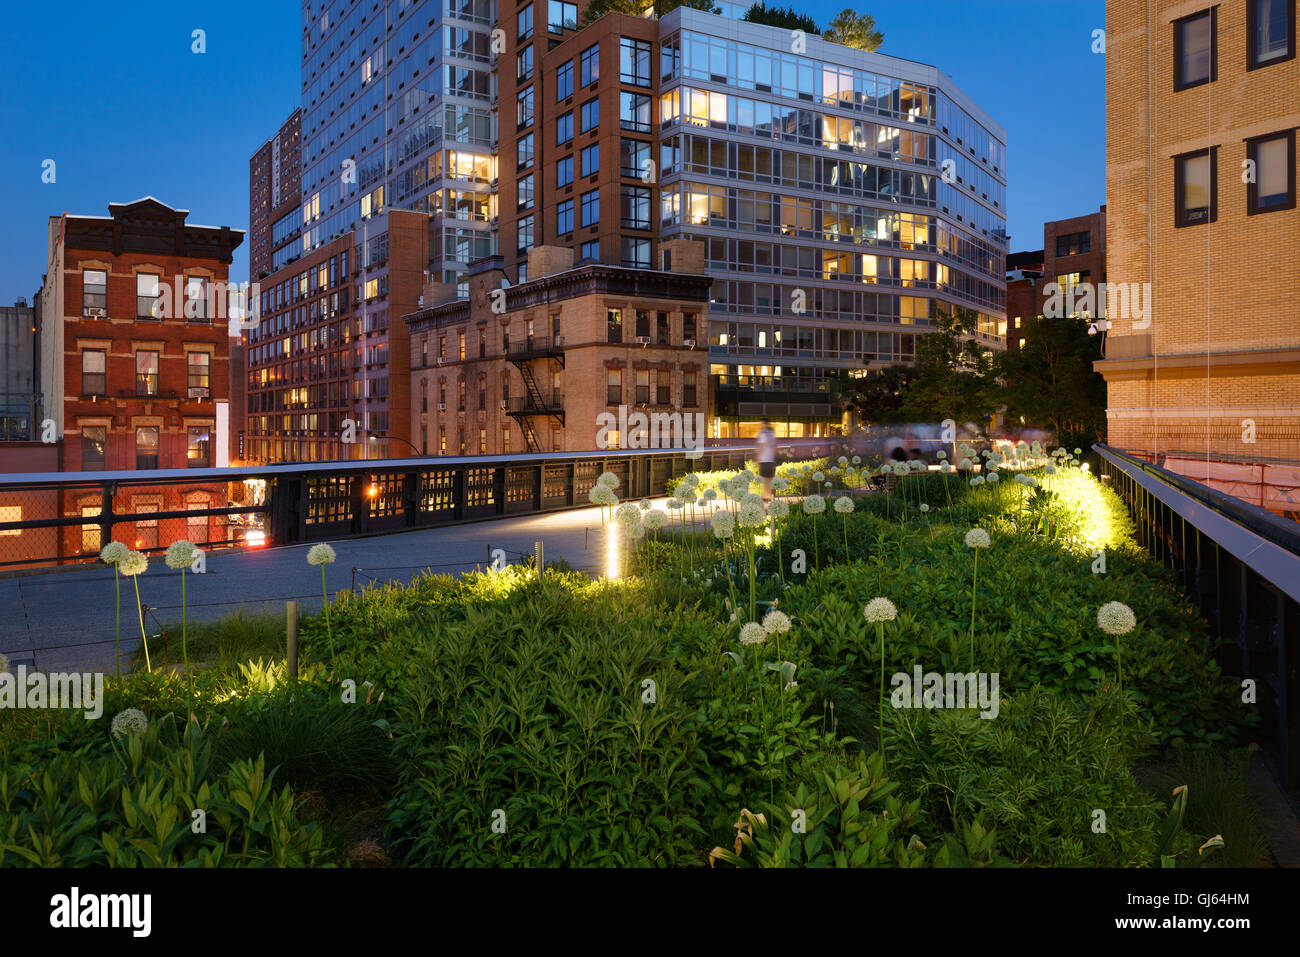 La ligne haute (antenne-vert moyen) au crépuscule en été près de la 10e Avenue et 17e Rue (Chelsea). Manhattan, New York City Banque D'Images